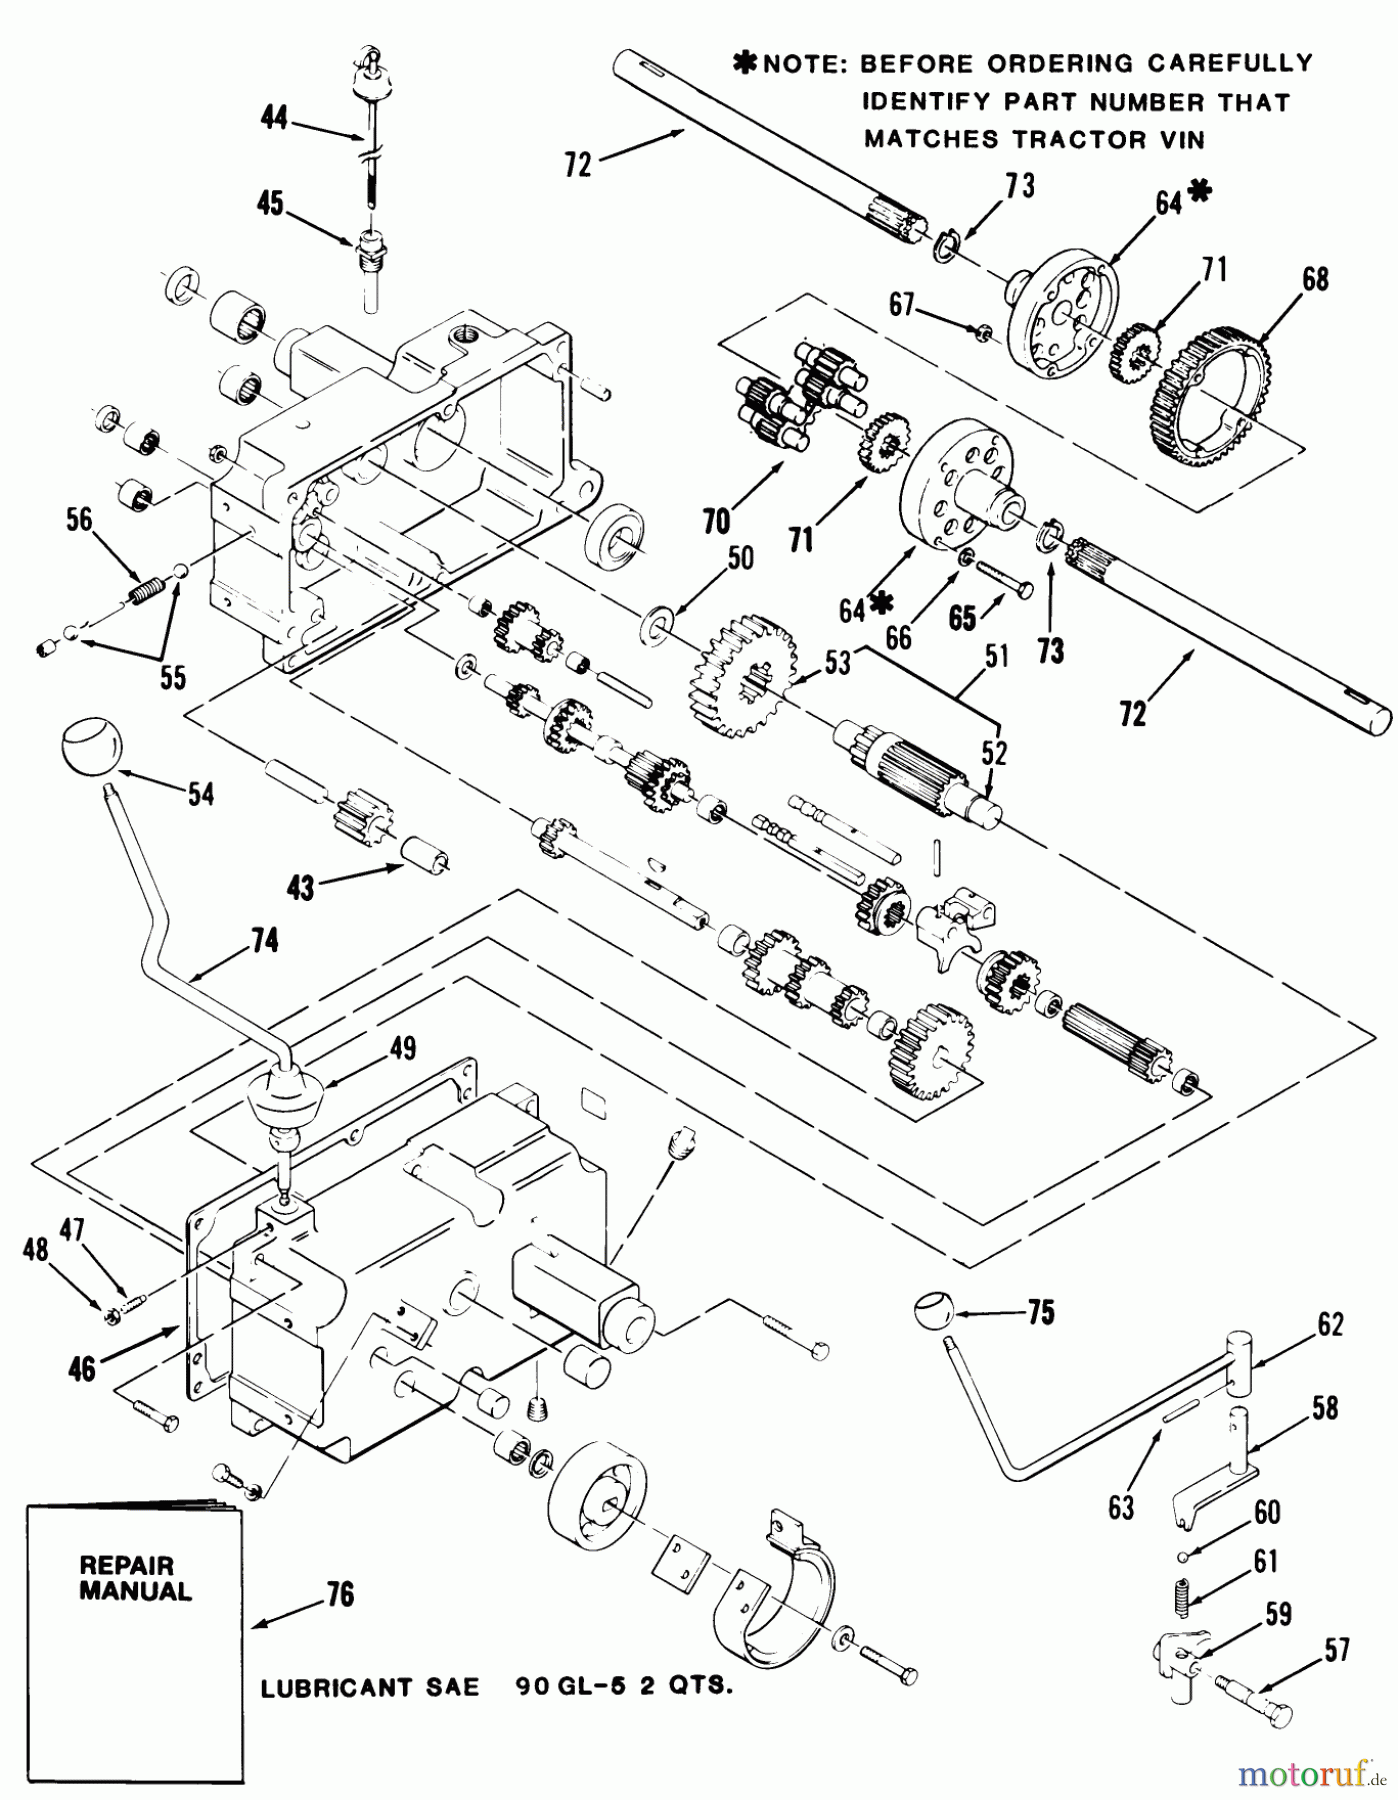  Toro Neu Mowers, Lawn & Garden Tractor Seite 1 21-10K803 (310-8) - Toro 310-8 Garden Tractor, 1986 MECHANICAL TRANSMISSION-8-SPEED #2